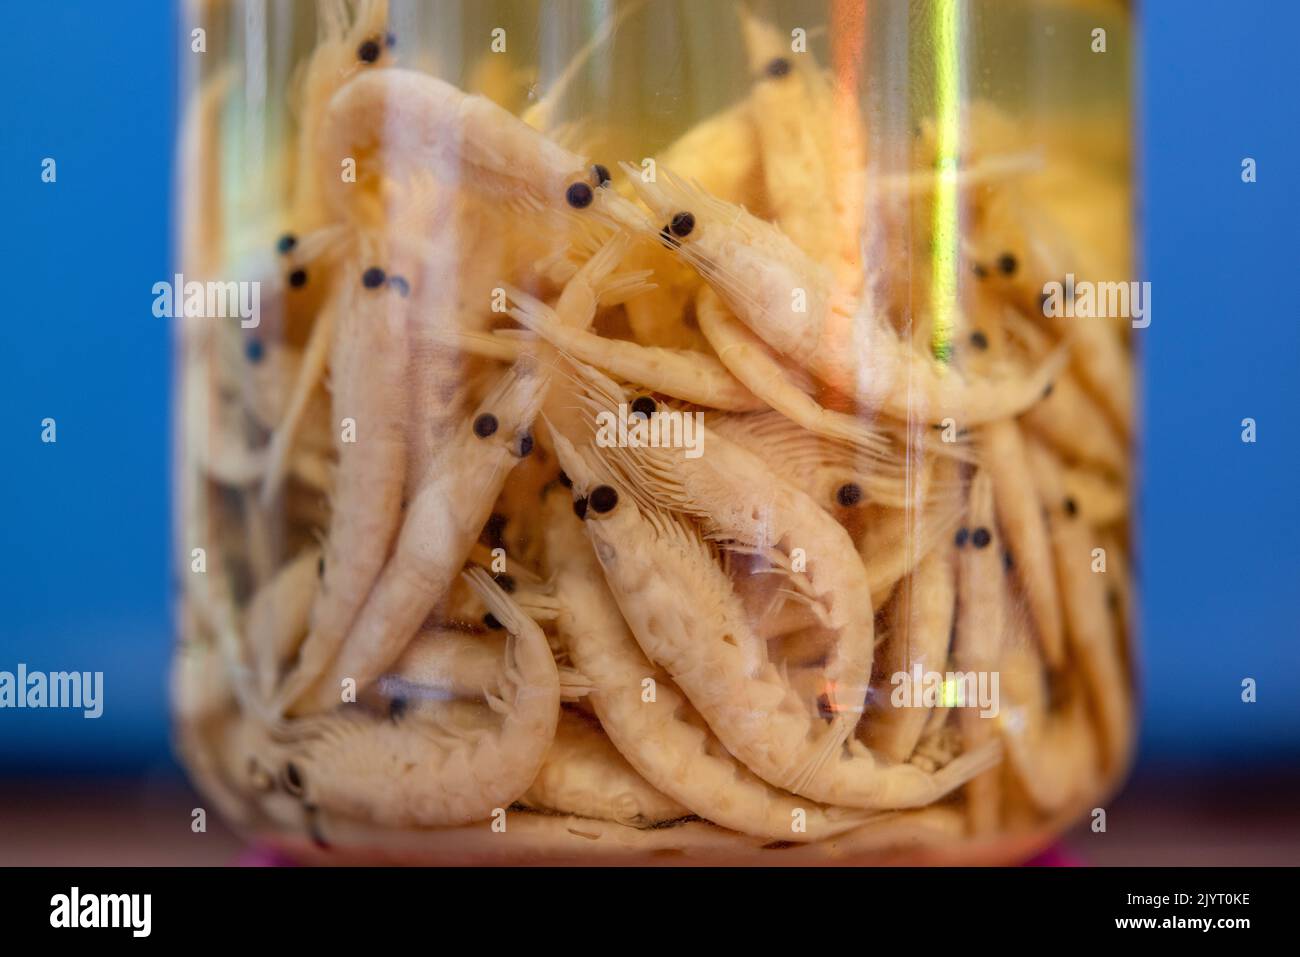 Krill son pequeños crustáceos del orden Euphausiacea, se considera una conexión trófica importante? cerca del fondo de la cadena alimenticia y es la fuente principal de alimento para muchos animales más grandes. Azores, Portugal, Océano Atlántico. Foto de stock